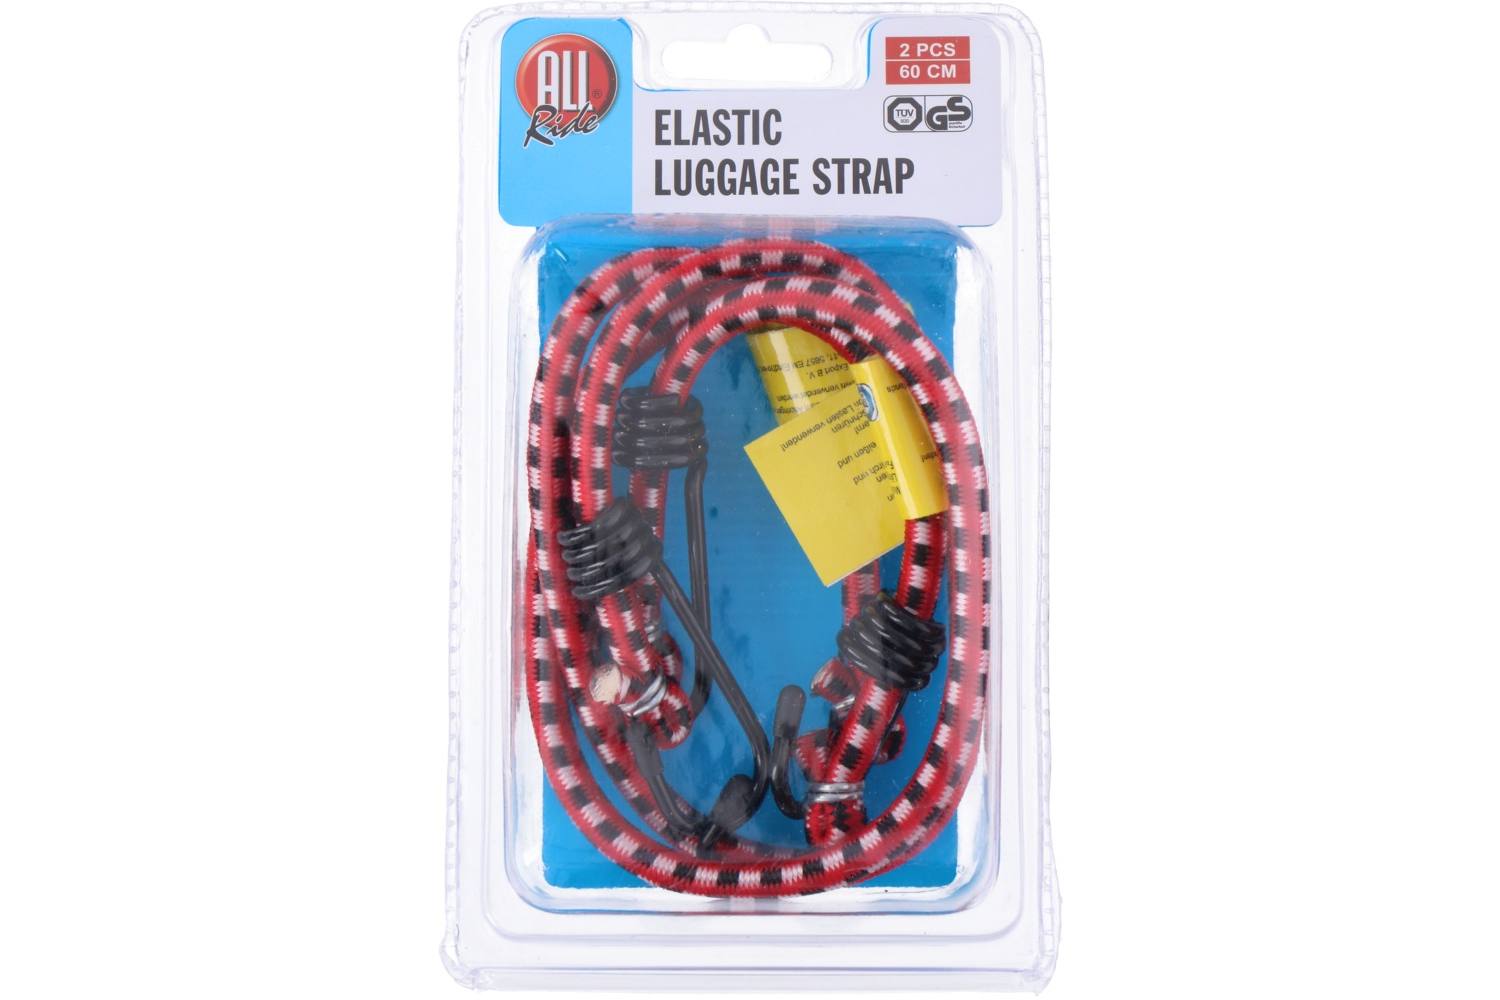 Luggage strap, AllRide, 2 pieces 2